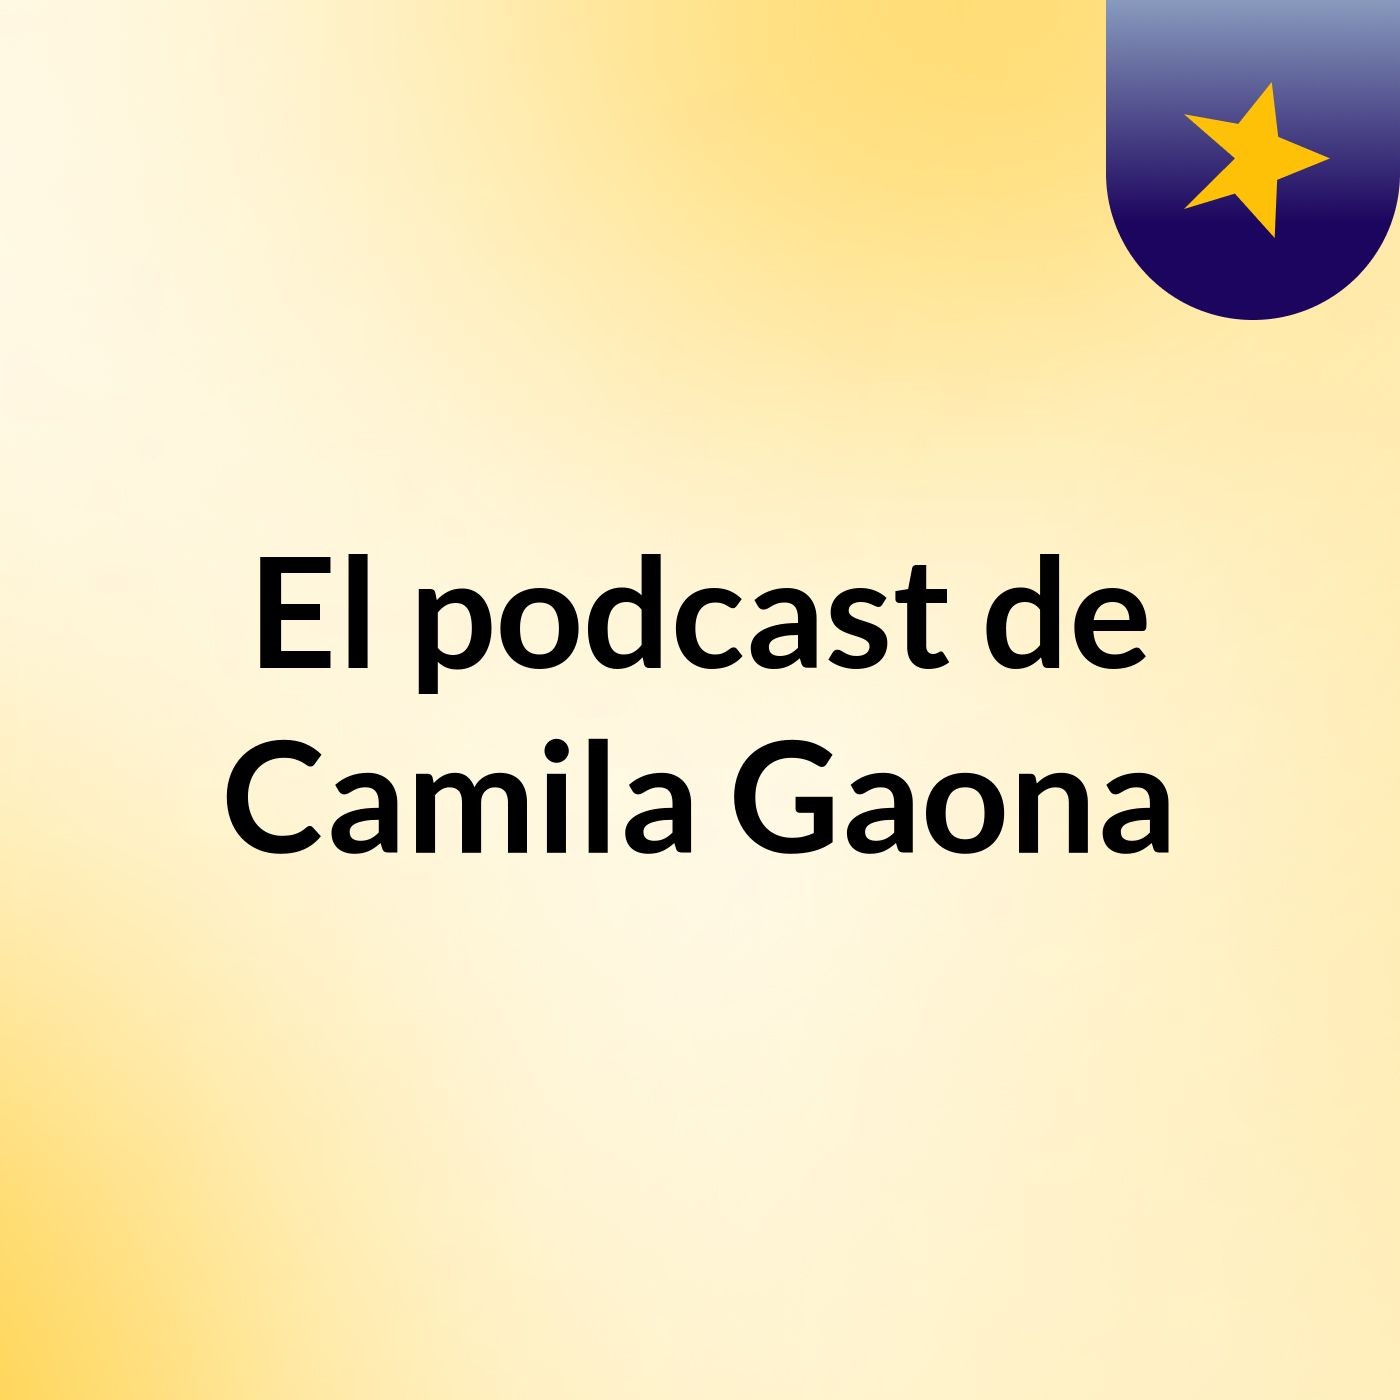 El podcast de Camila Gaona